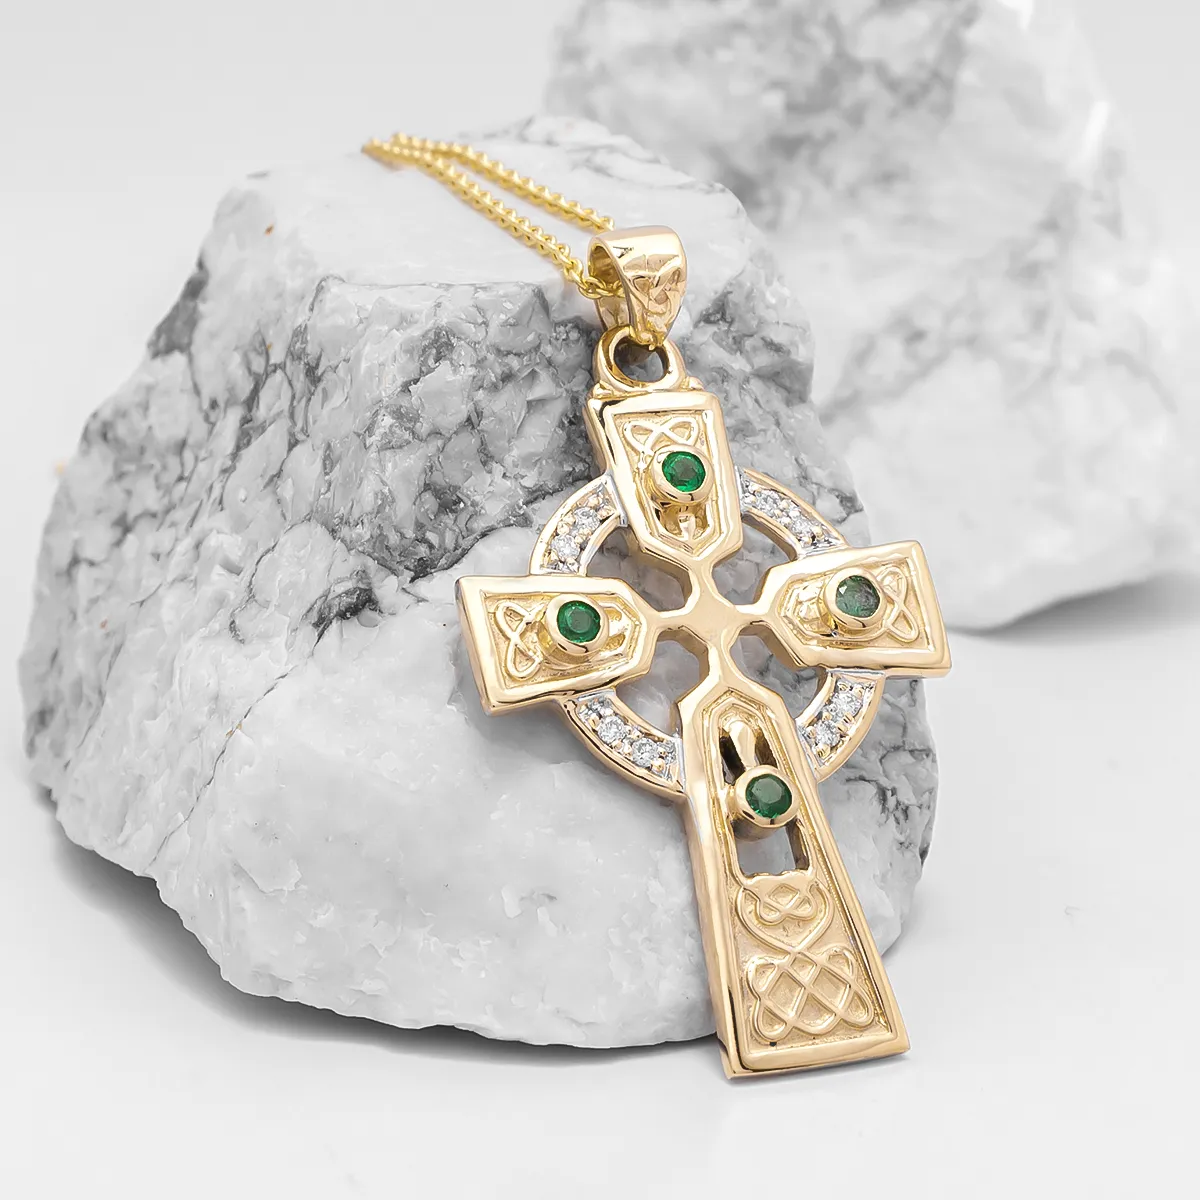 Gold Emerald And Brilliant Cut Diamond Cross Pendant On Chain